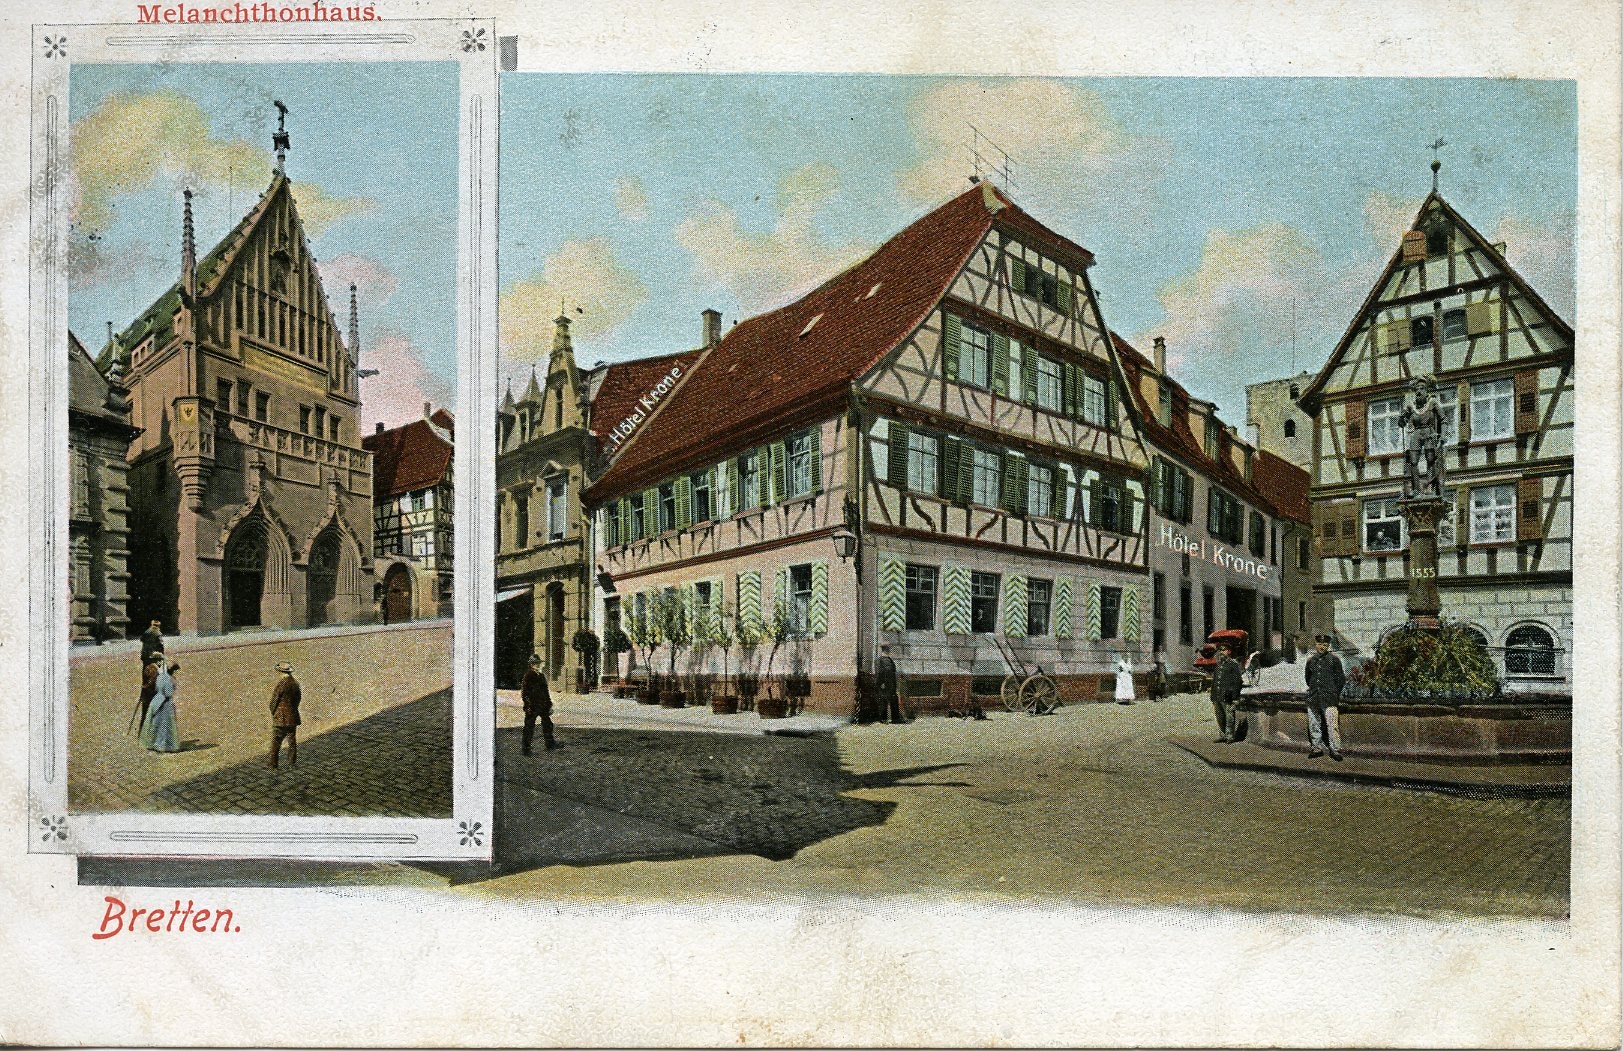 Postkarte aus Bretten 1915 (Historisches Museum der Pfalz, Speyer CC BY)